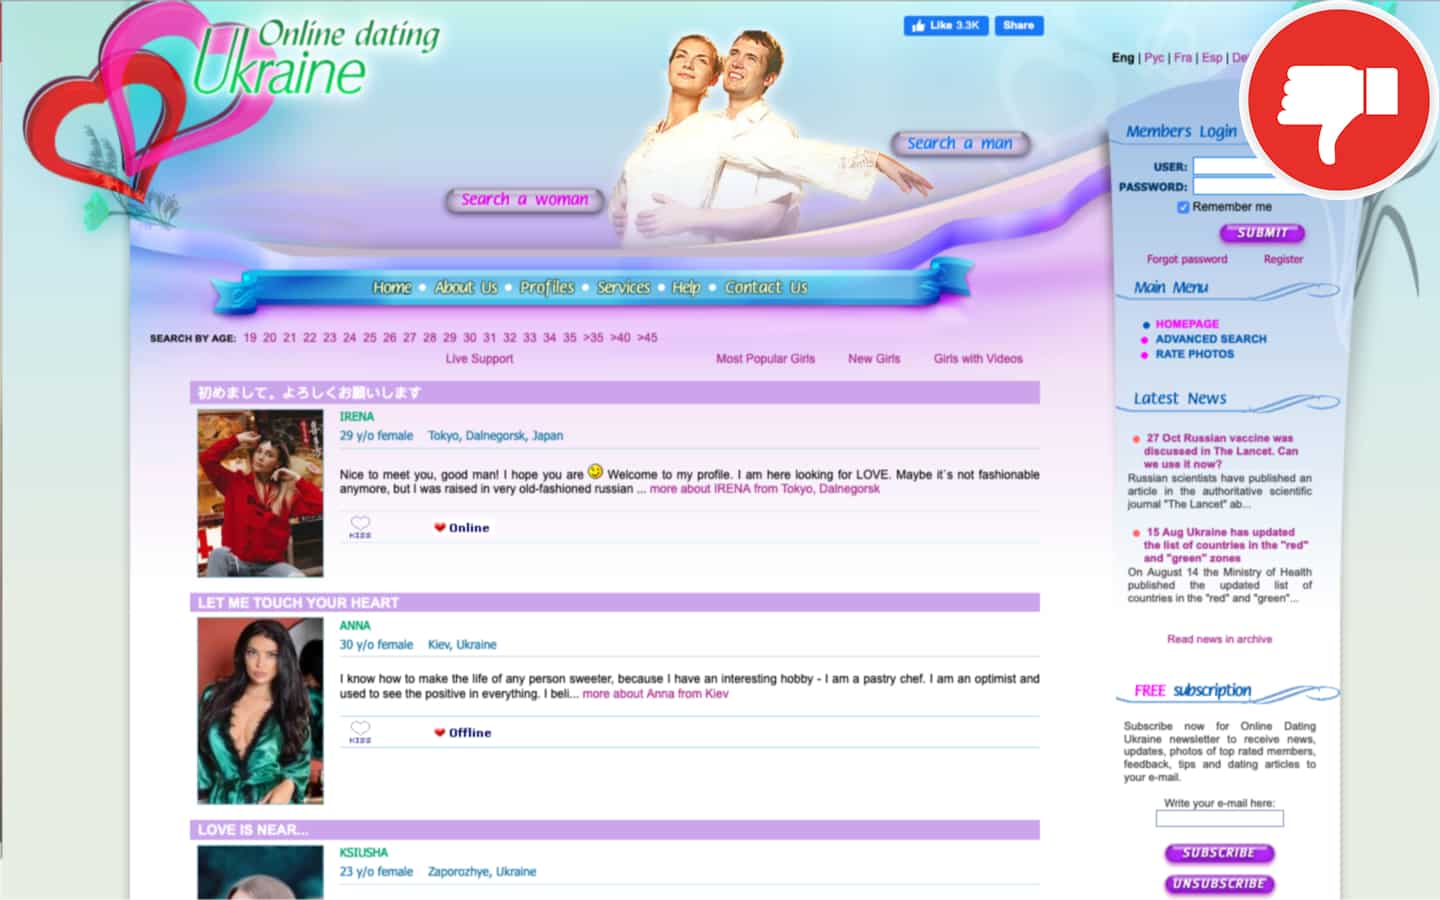 sarajevo sajt za upoznavanje online dating ukraine fake